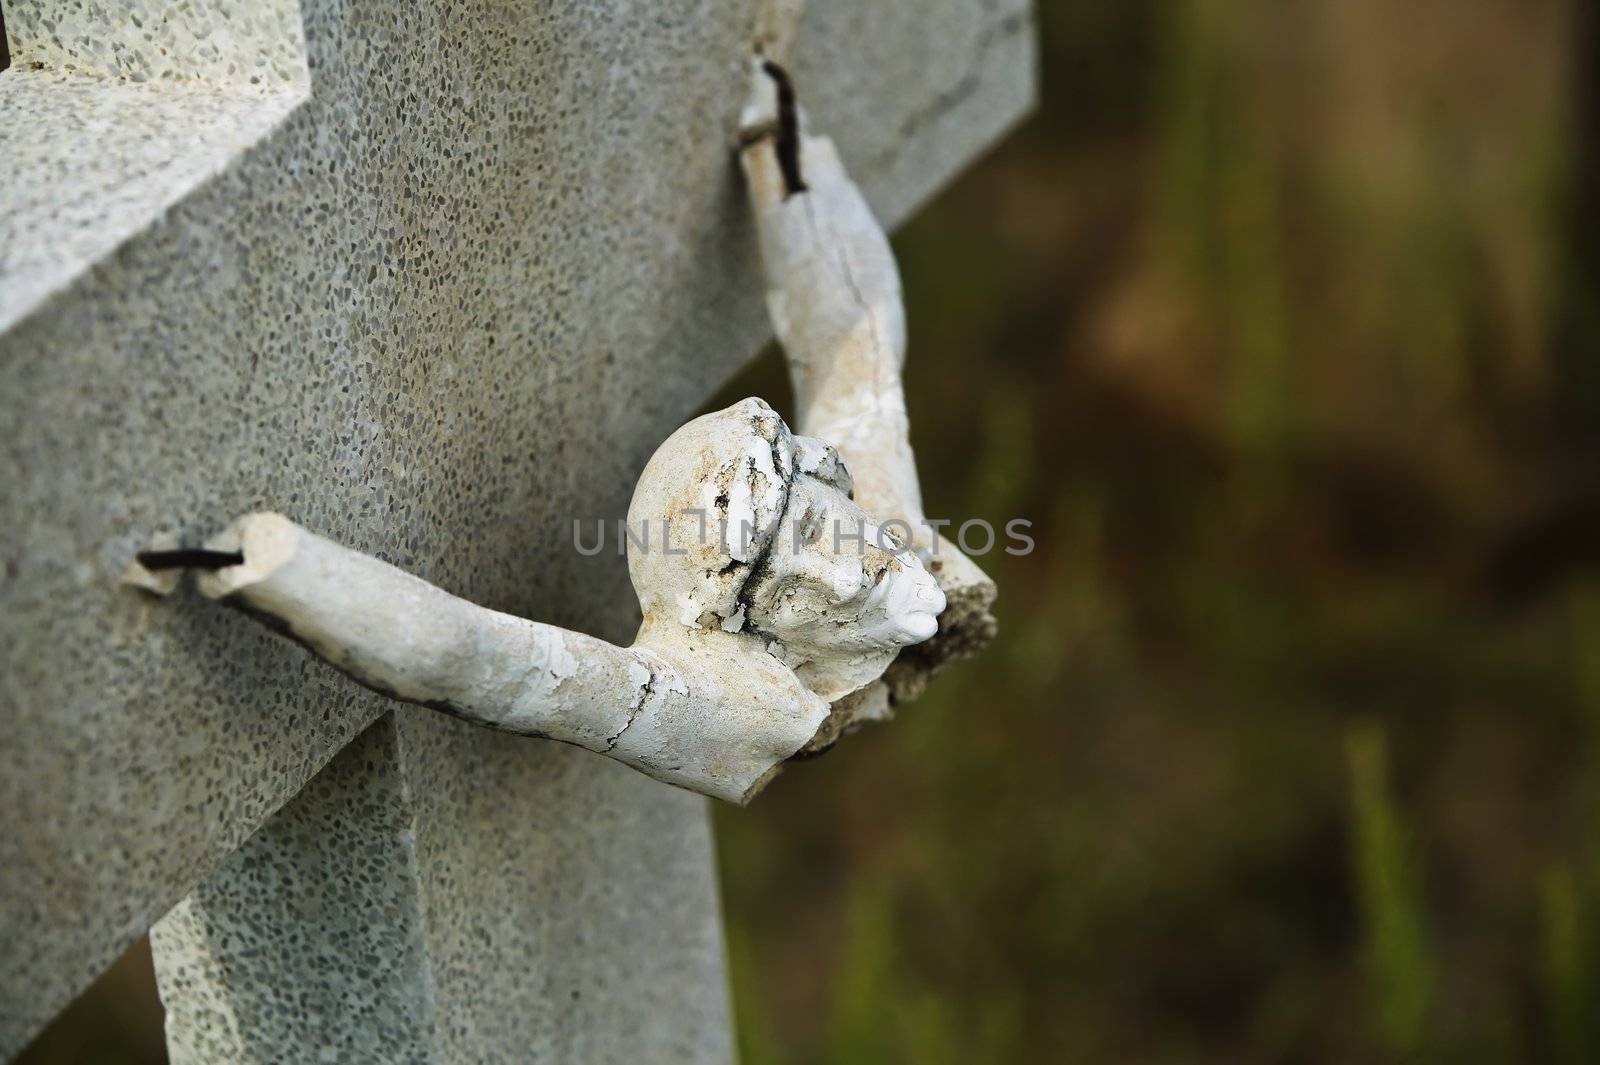 Broken figure of jesus Christ on a grave marker